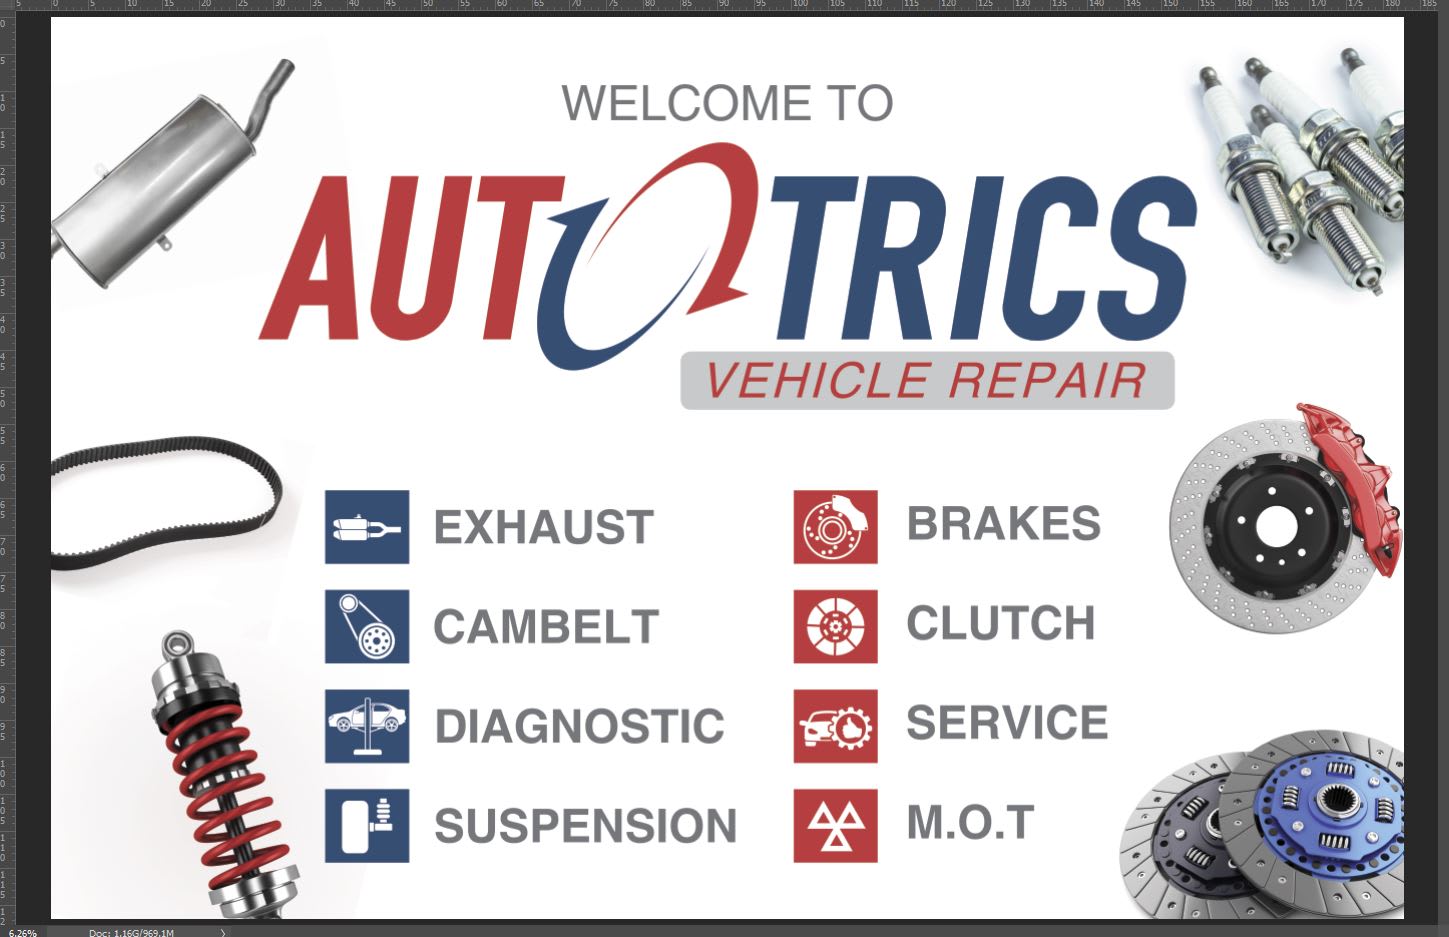 Images Autotrics Vehicle Repair